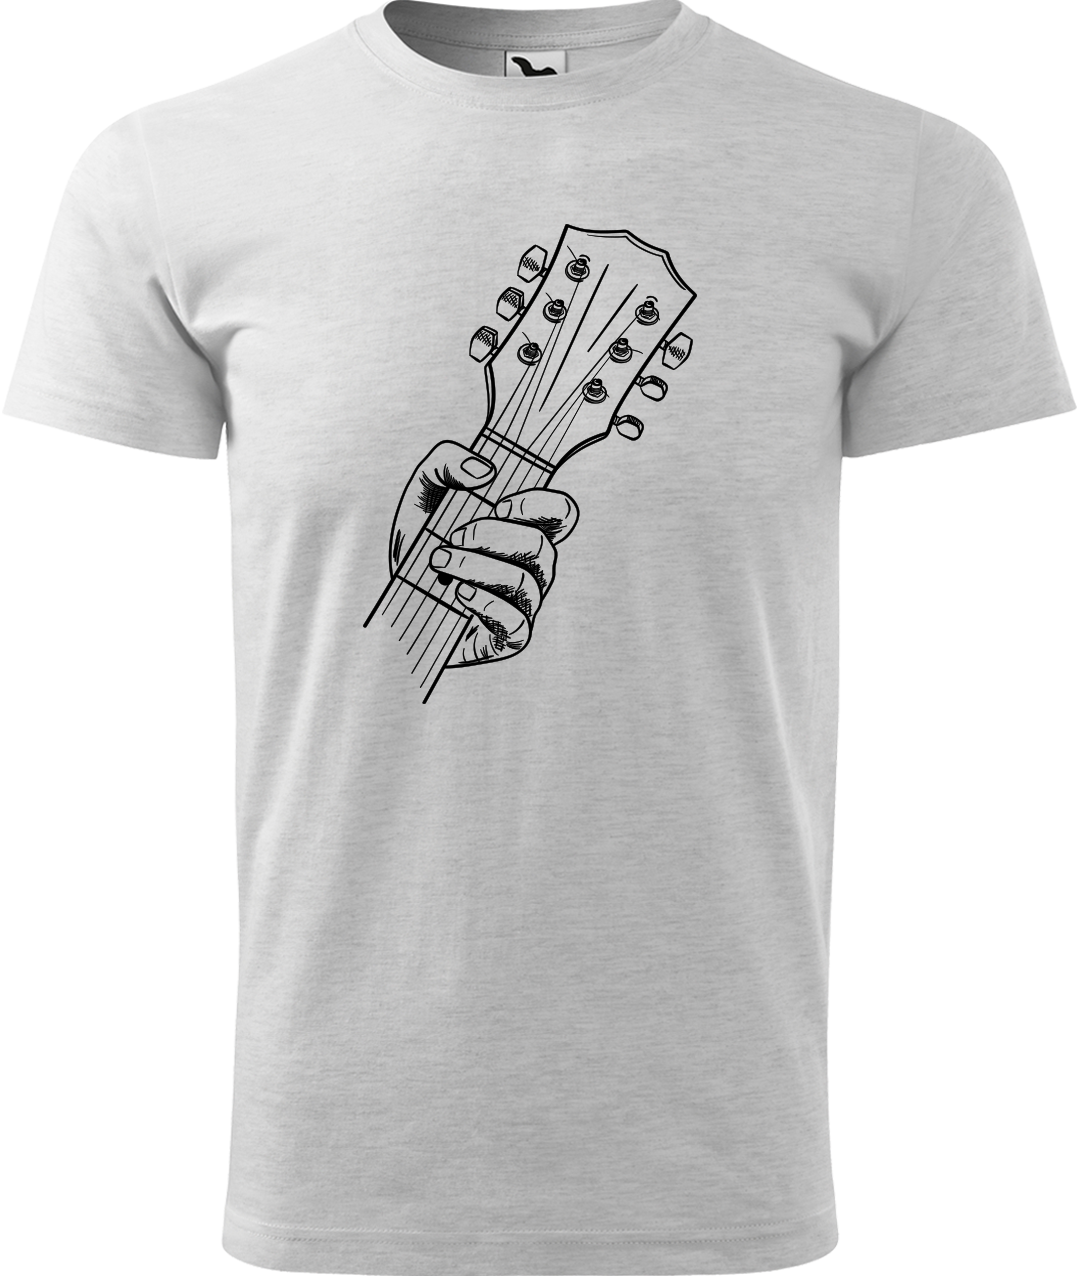 Pánské tričko s kytarou - Hlava kytary Velikost: L, Barva: Světle šedý melír (03)